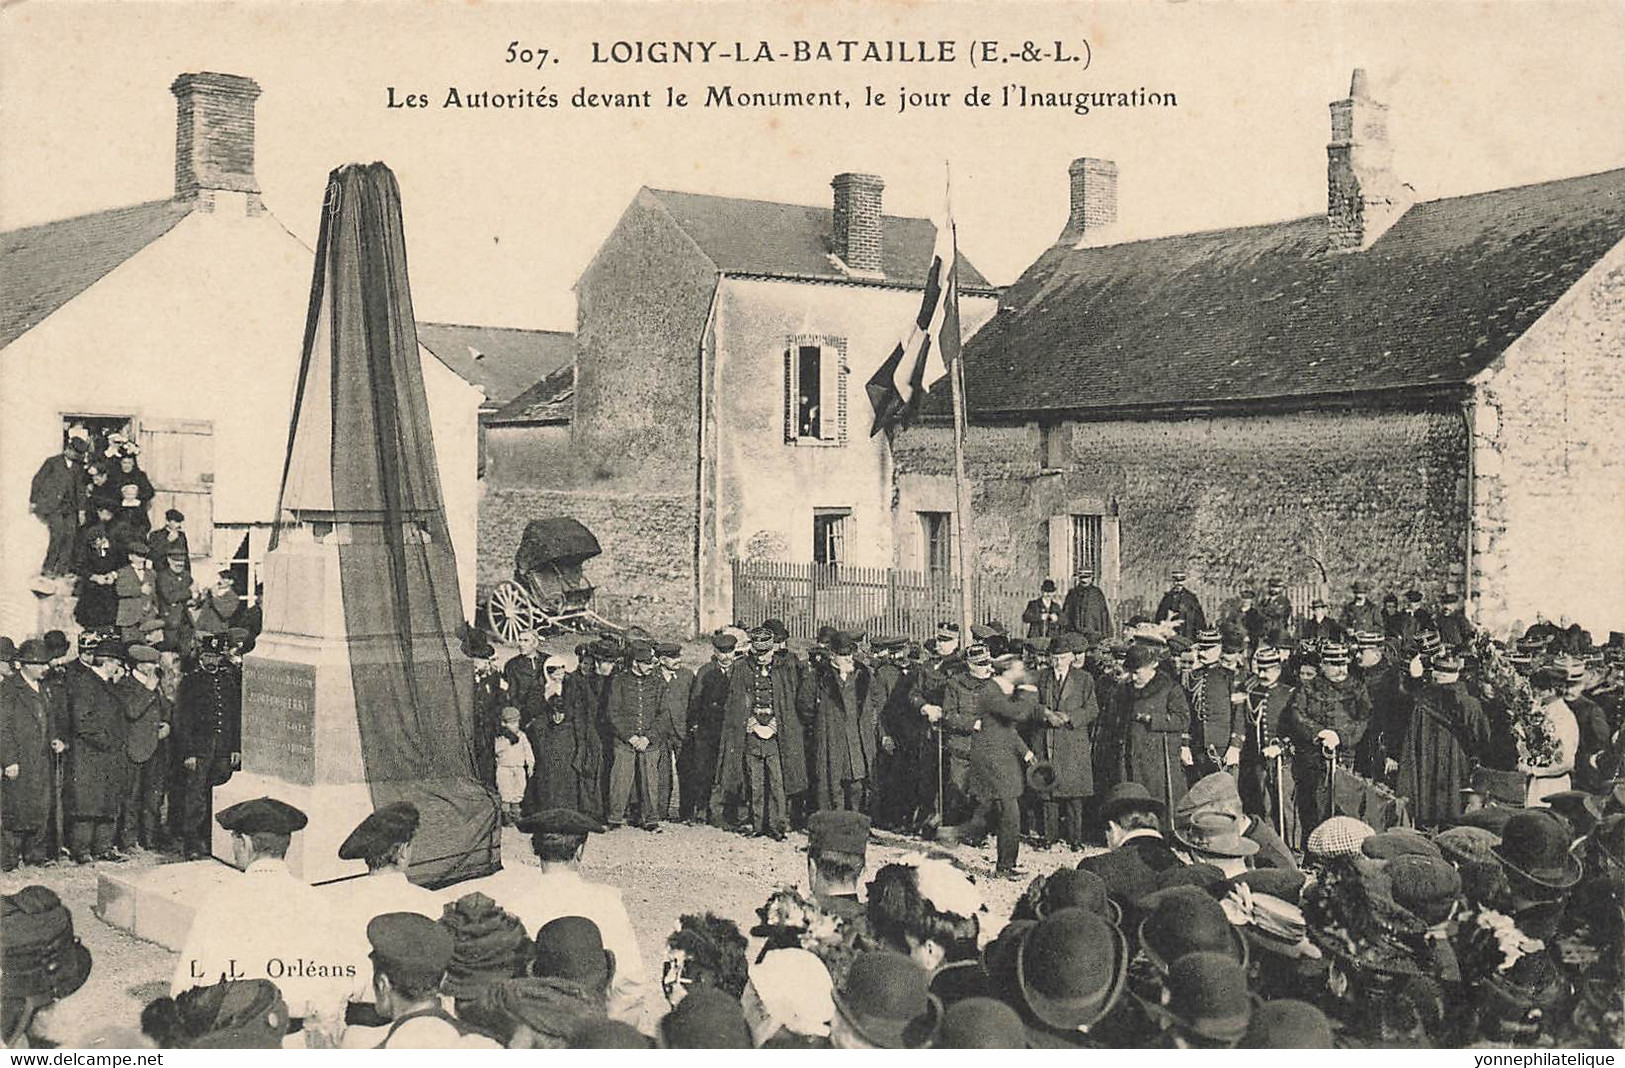 28 - EURE ET LOIR - LOIGNY-LA-BATAILLE - Inauguration Du Monument Aux Morts Par Les Autorités - Défaut Pliure - 10843 - Loigny